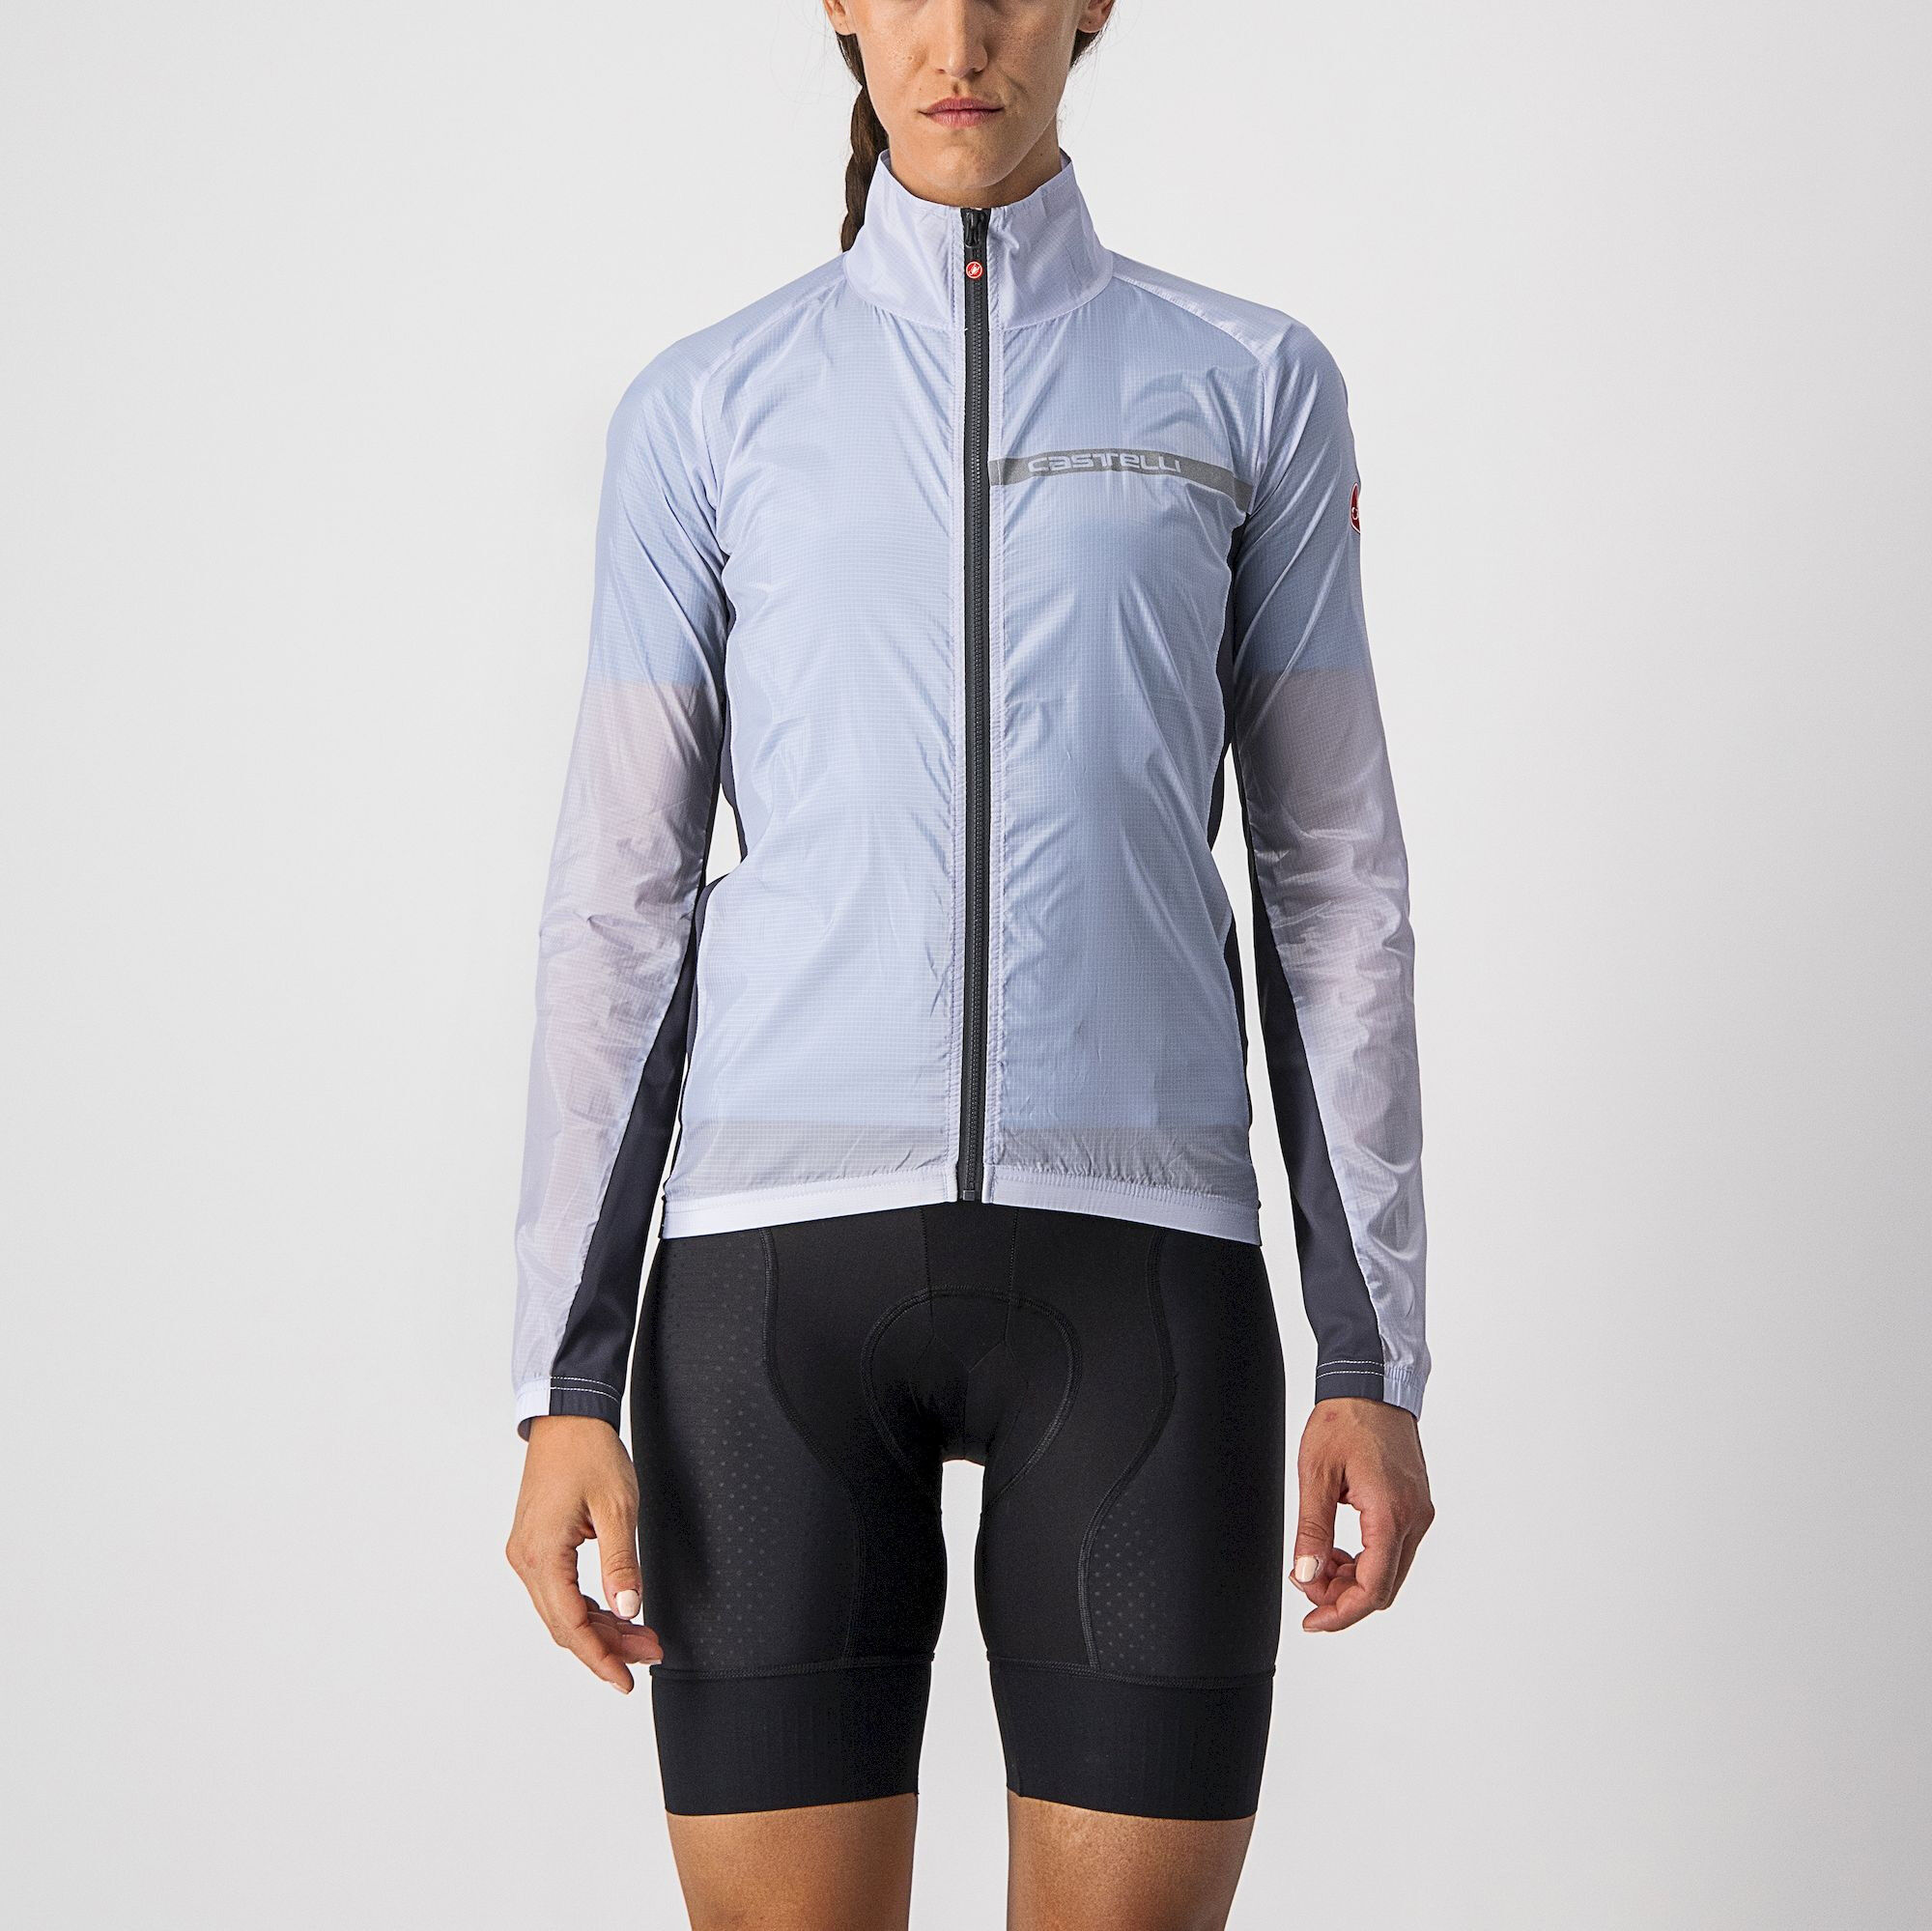 Castelli Squadra Stretch  - Cycling jacket - Women's